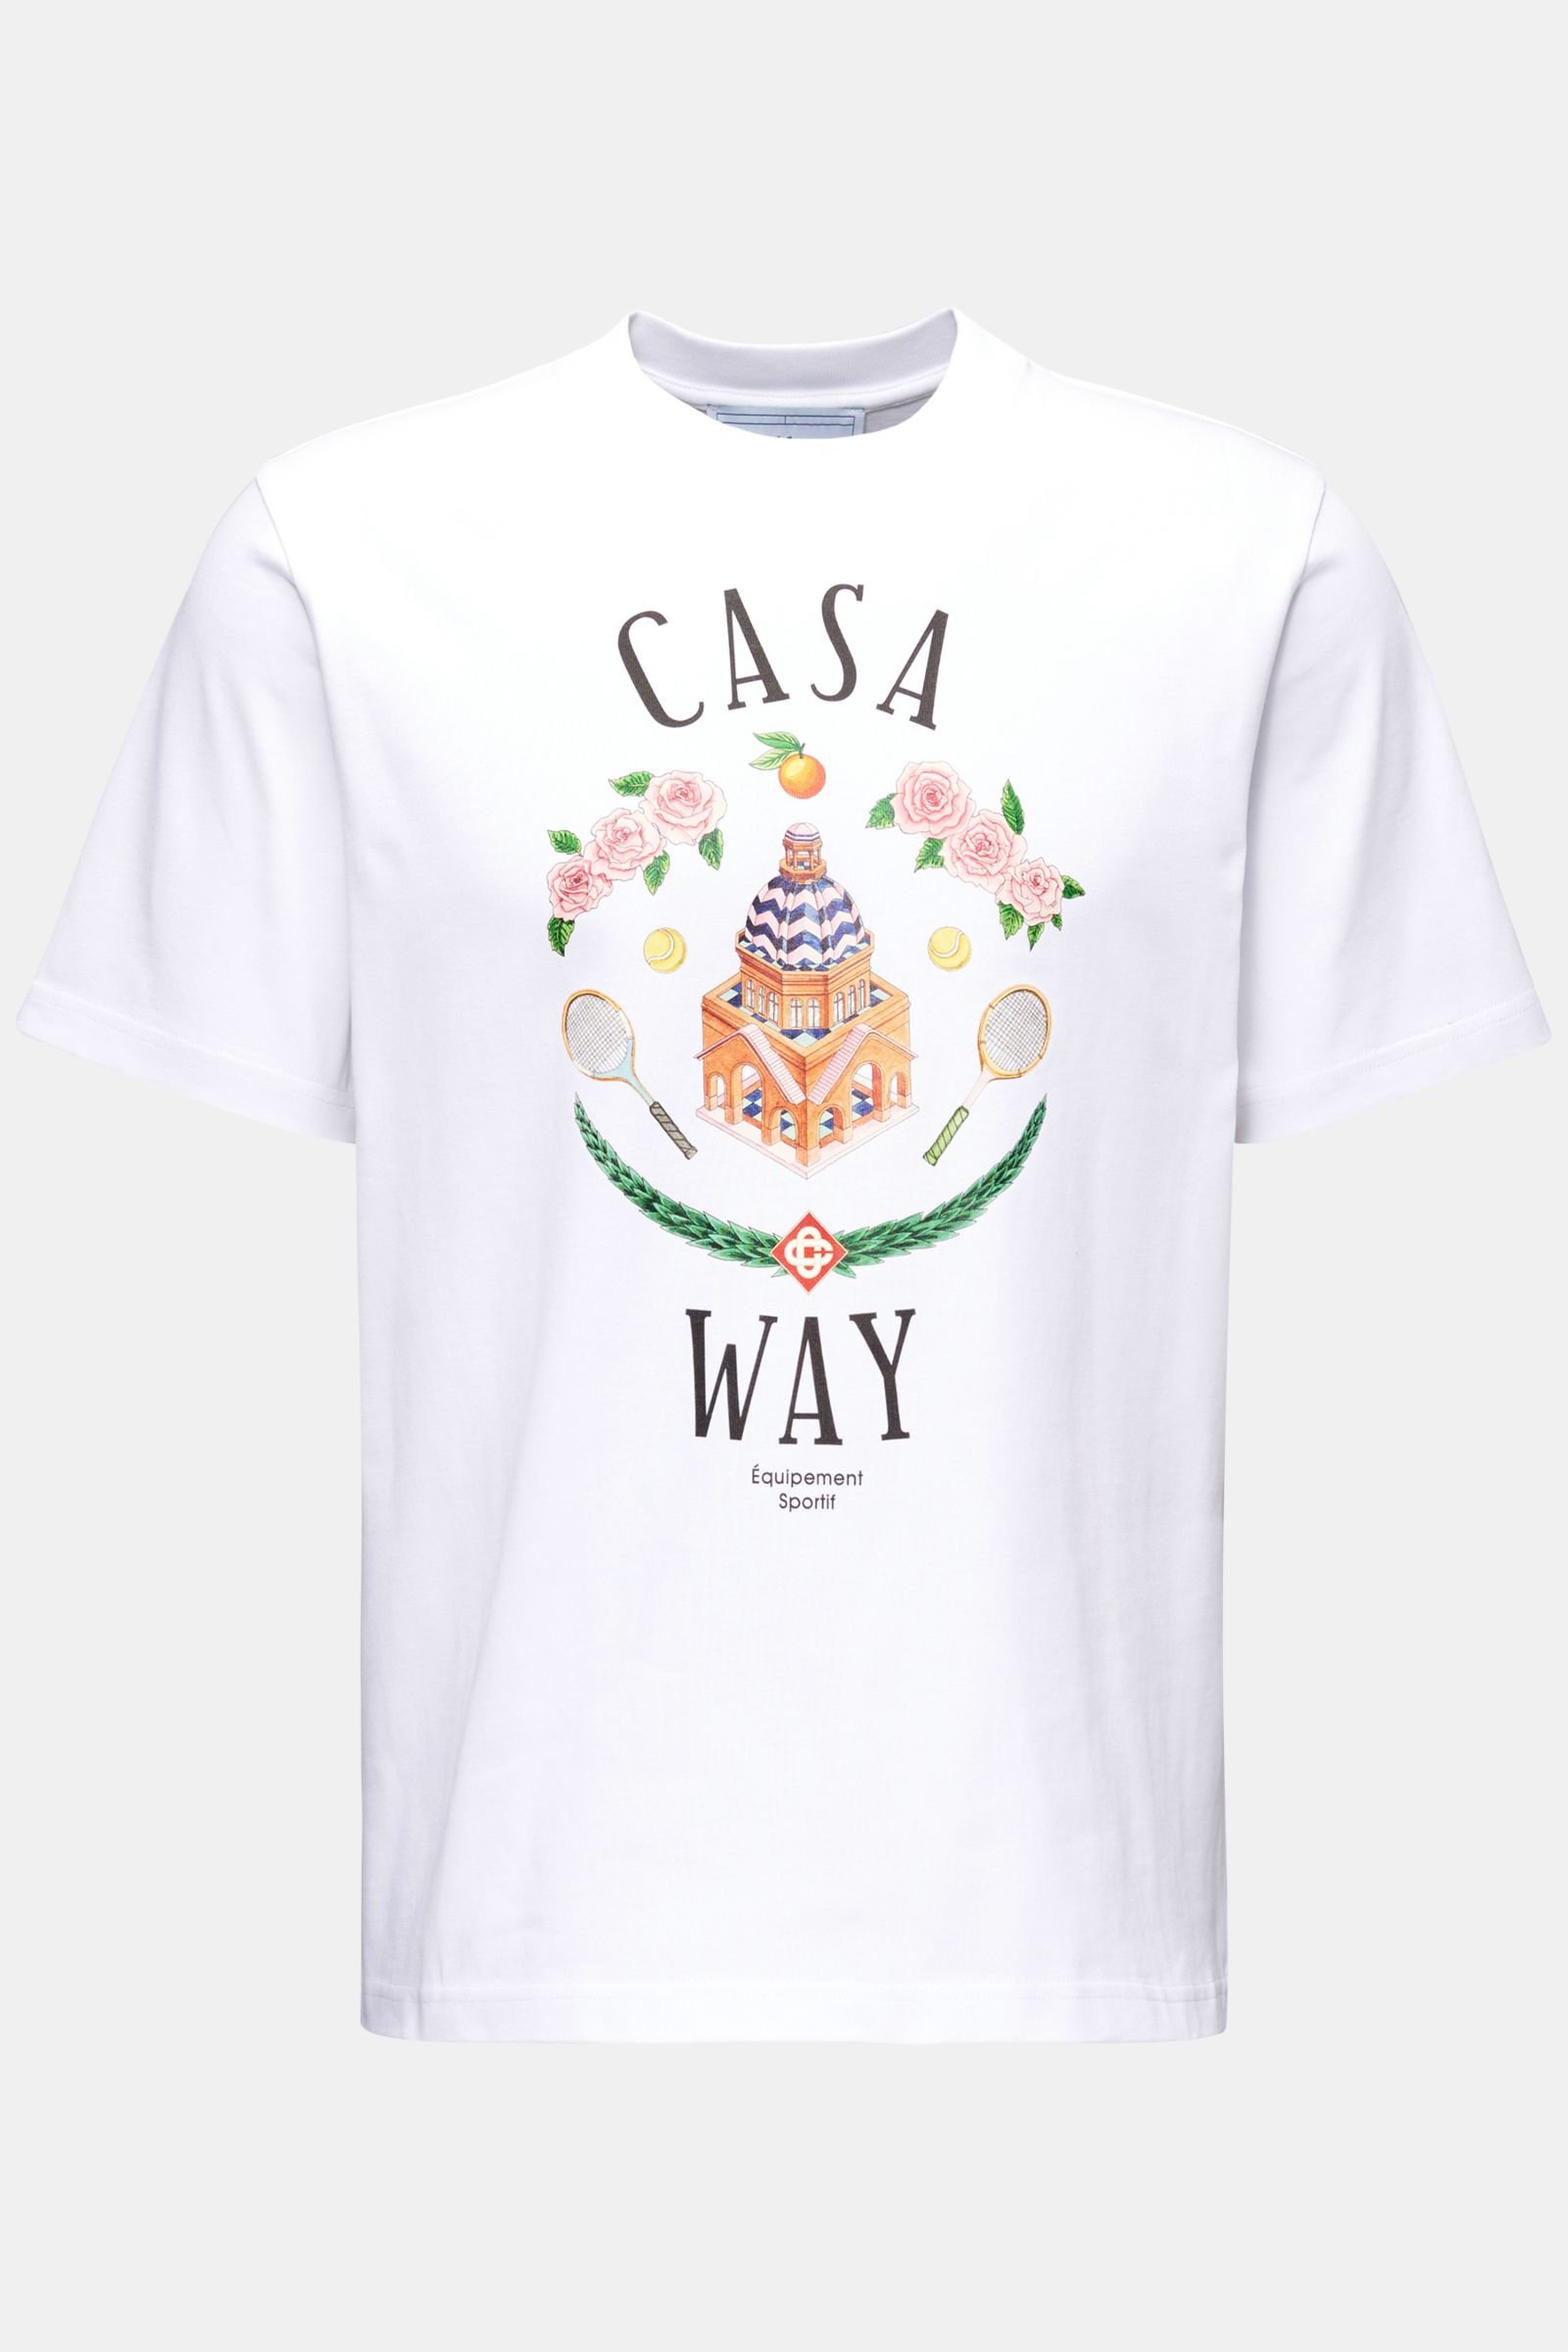 Rundhals-T-Shirt 'Casa Way' weiß